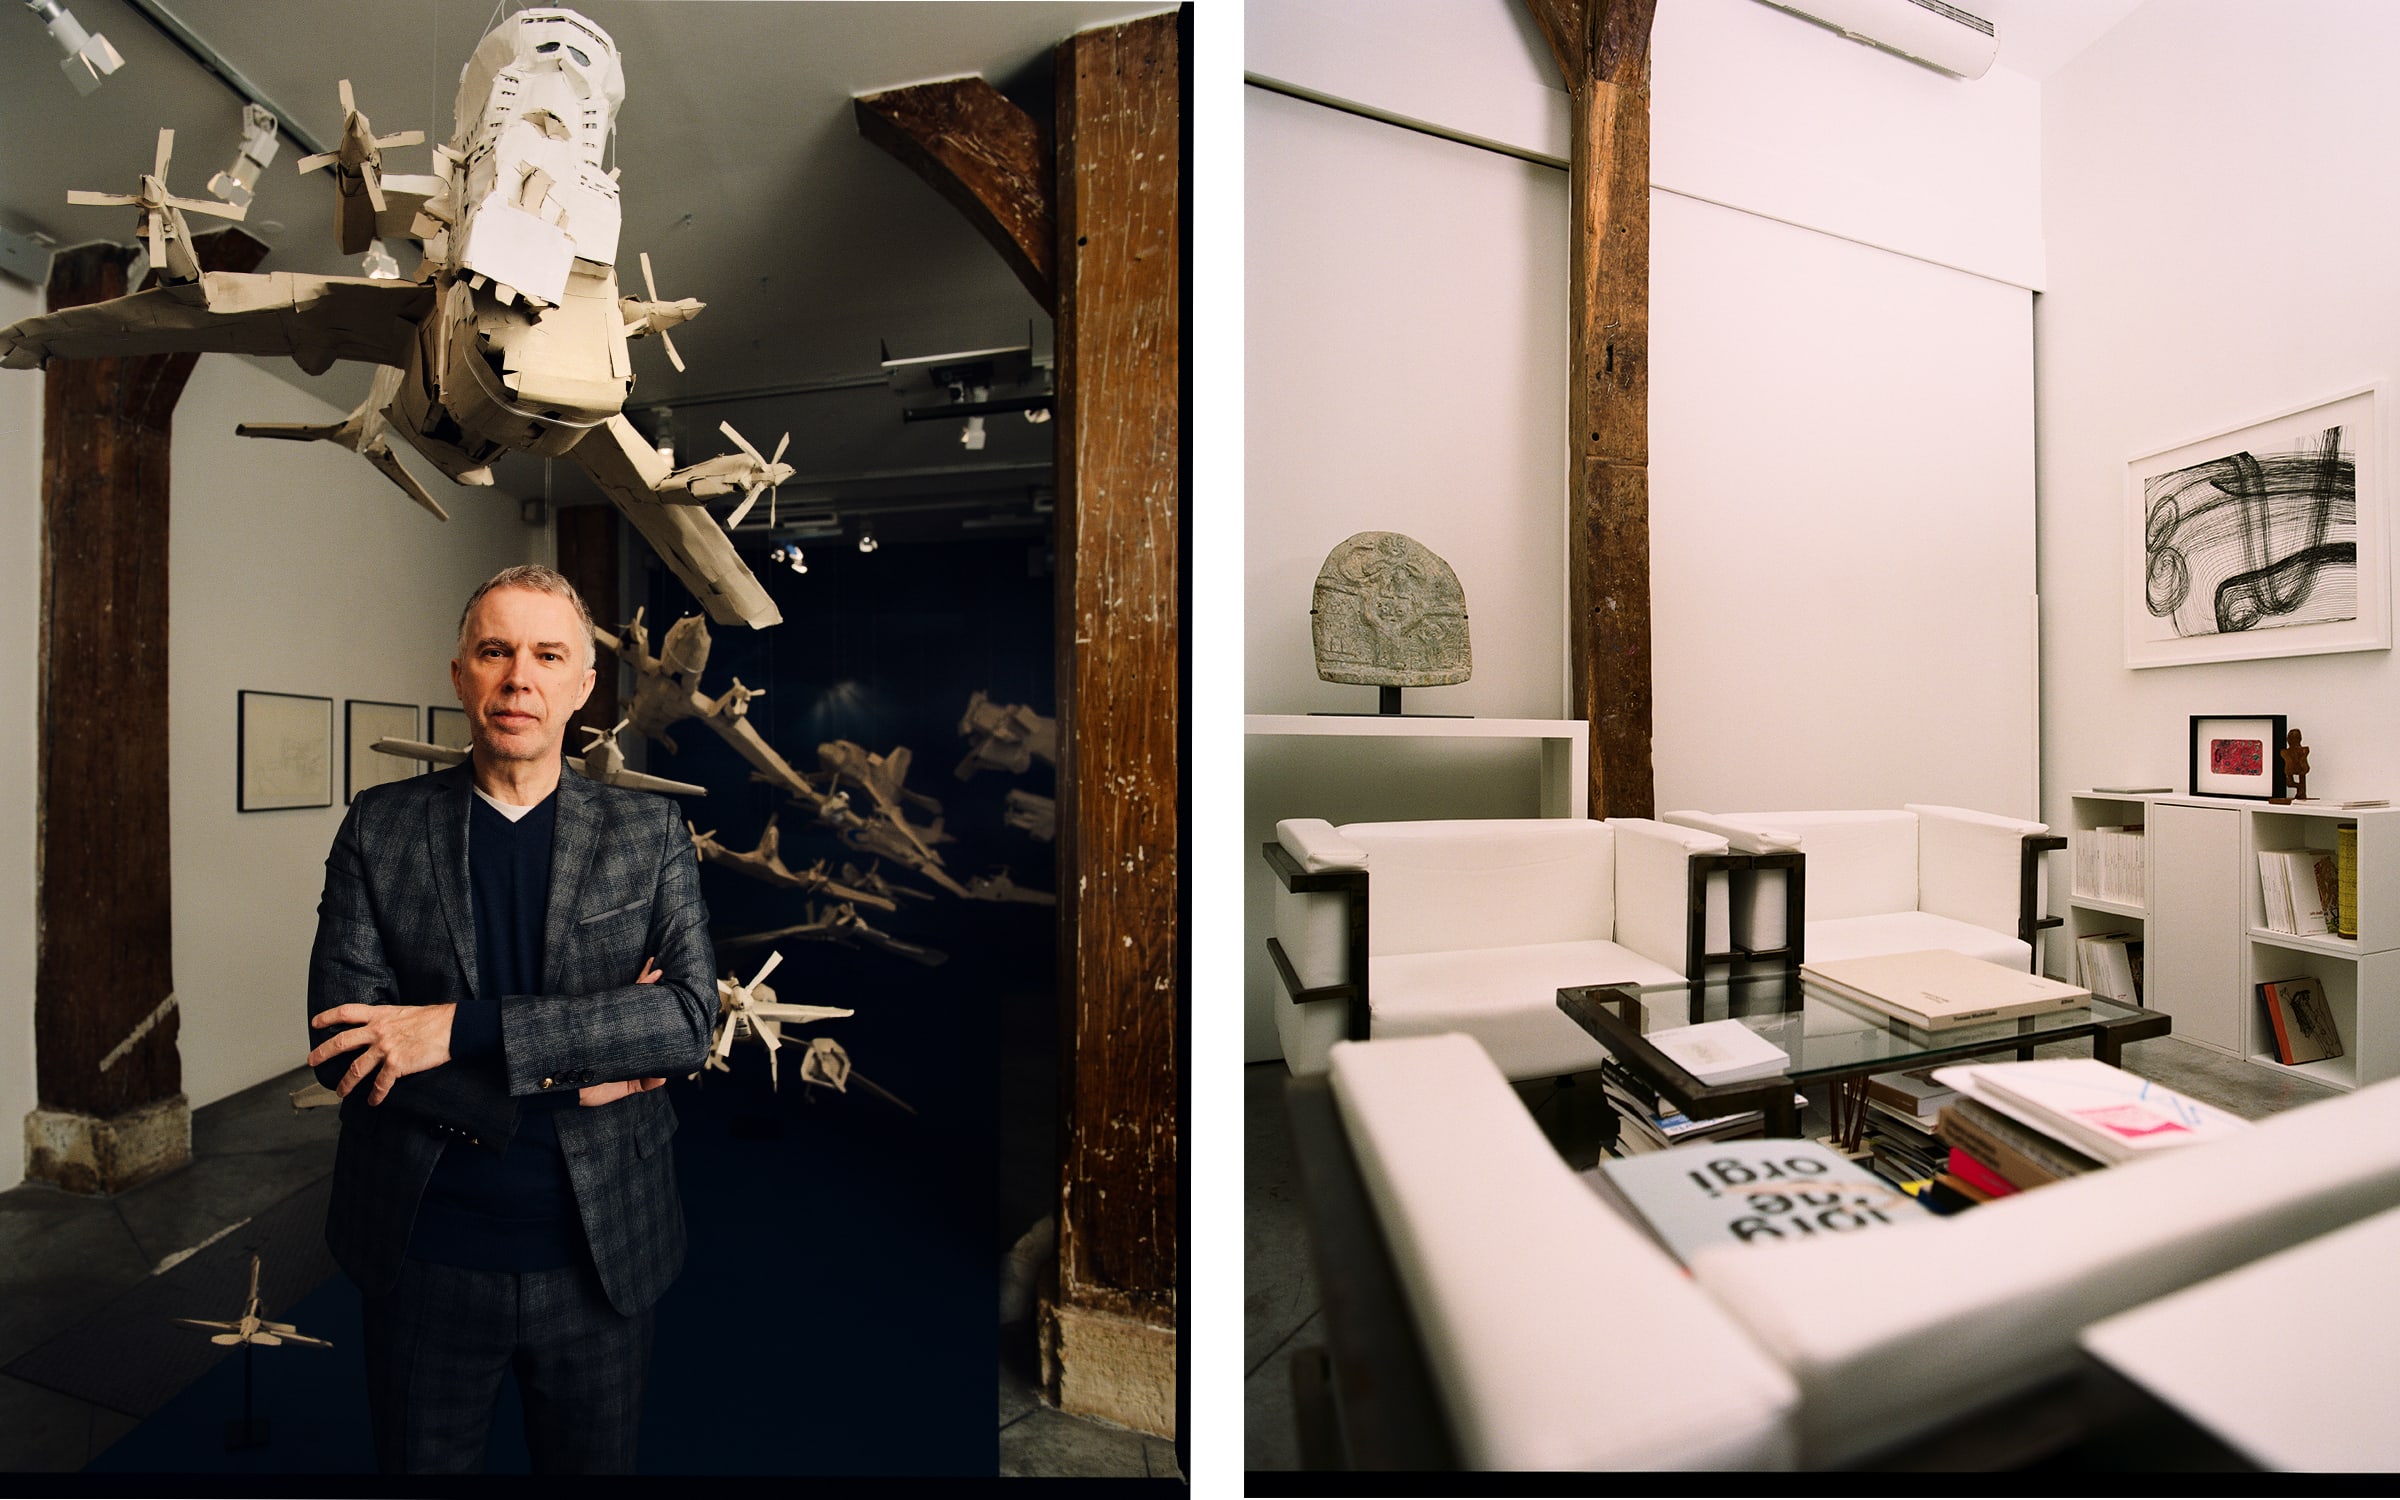 À gauche, Christian Berst dans sa galerie. À droite, le salon de l'espace, avec des catalogues publiés par Berst. Photo par Manuel Obadia-Wills pour Paris+ par Art Basel.